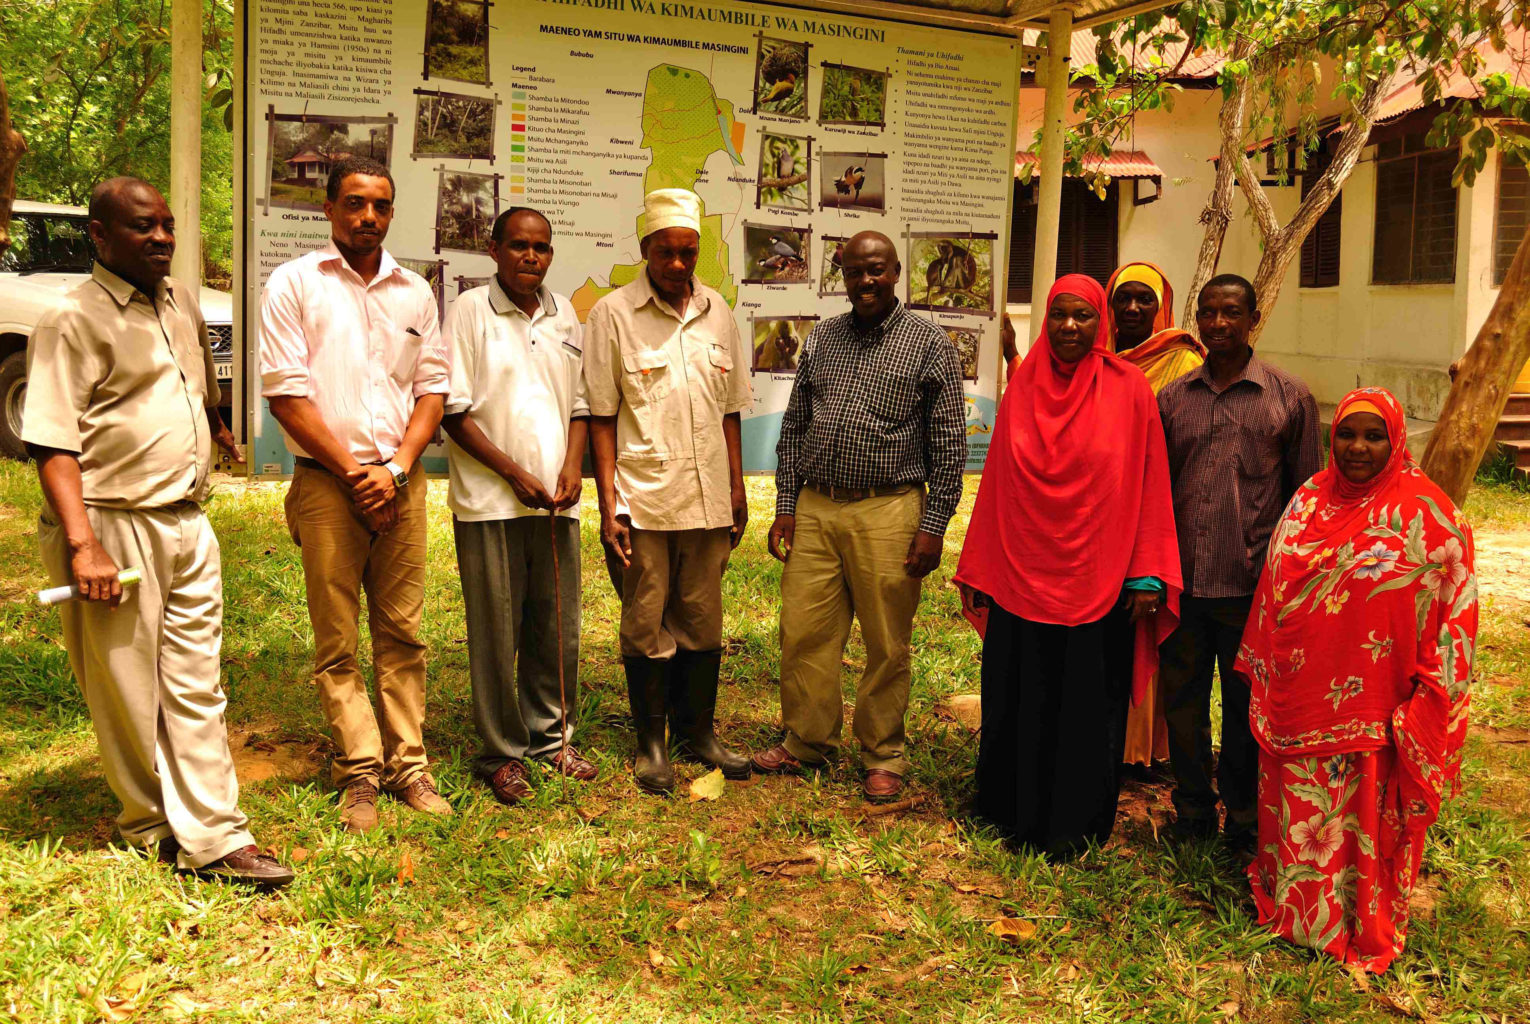 Masingini forest management team